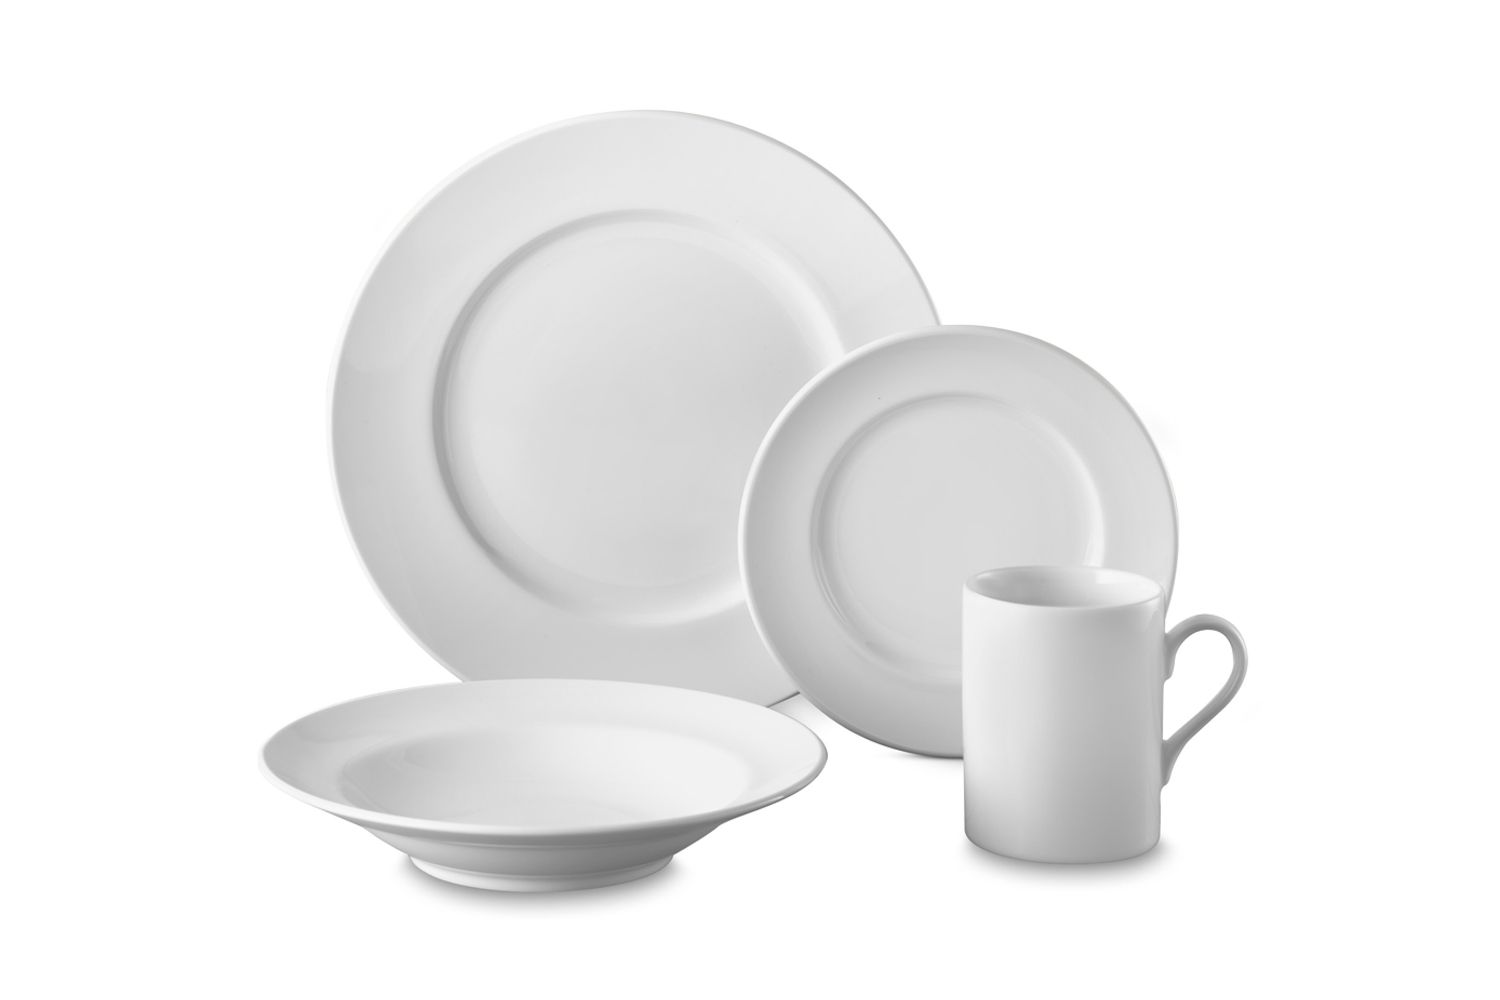 Brasserie Porcelain 16-Piece Dinnerware Sets